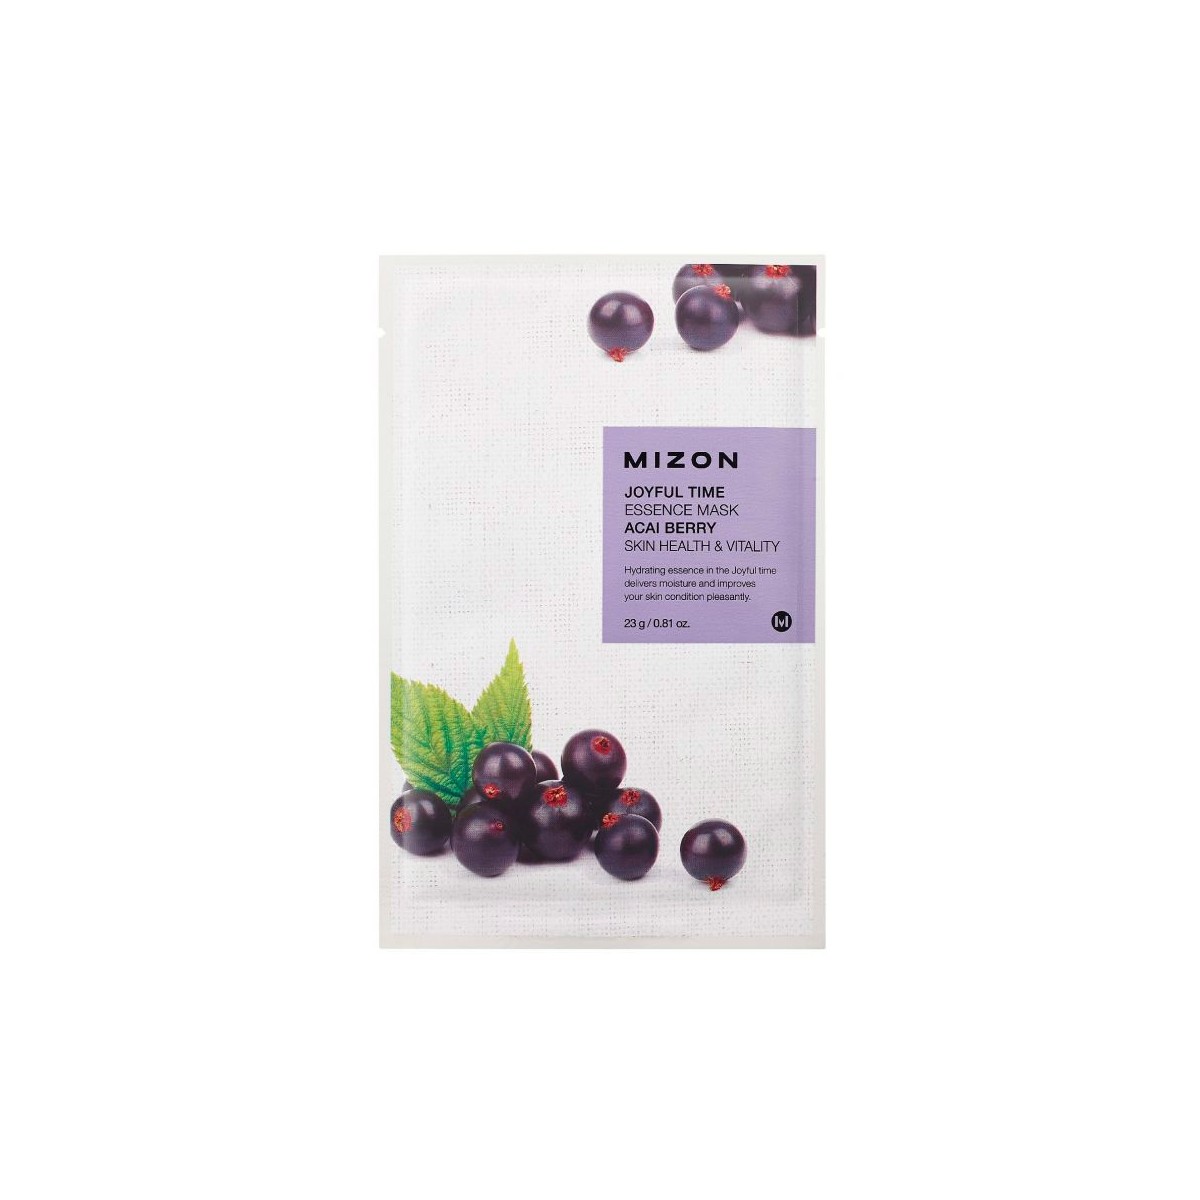 Mascarillas Coreanas de Hoja al mejor precio: Joyful Time Essence Mask Acai Berry - Antioxidante y revitalizante de Mizon en Skin Thinks - Piel Seca